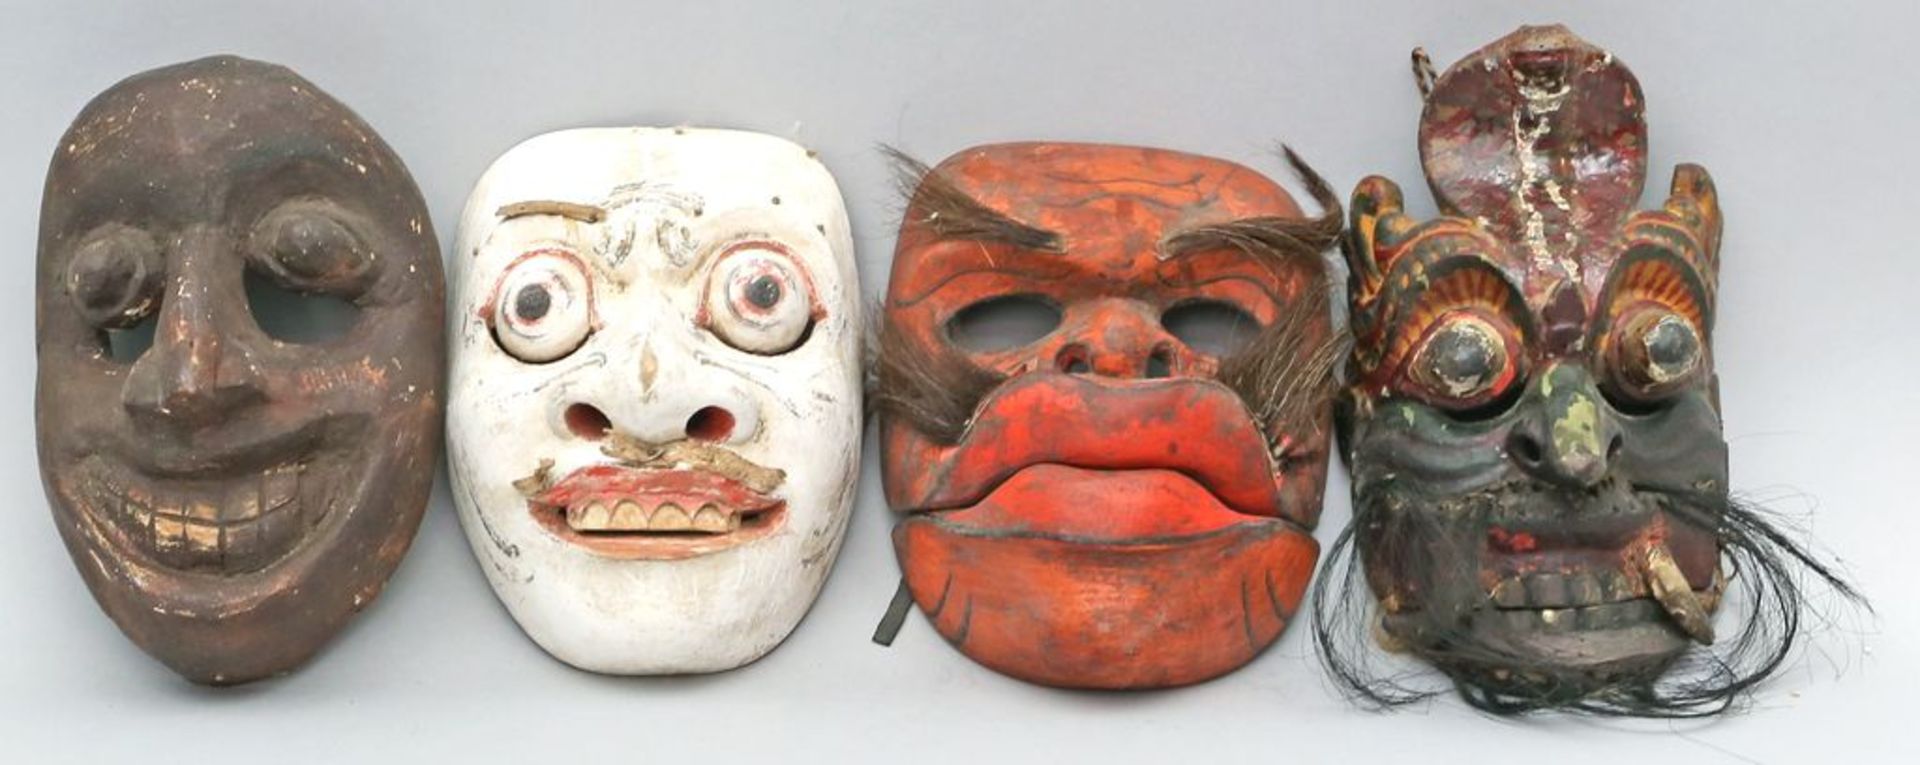 4 div. Masken. Holz, geschnitzt und überwiegend farbig gefasst. Altersspuren bzw. 1x